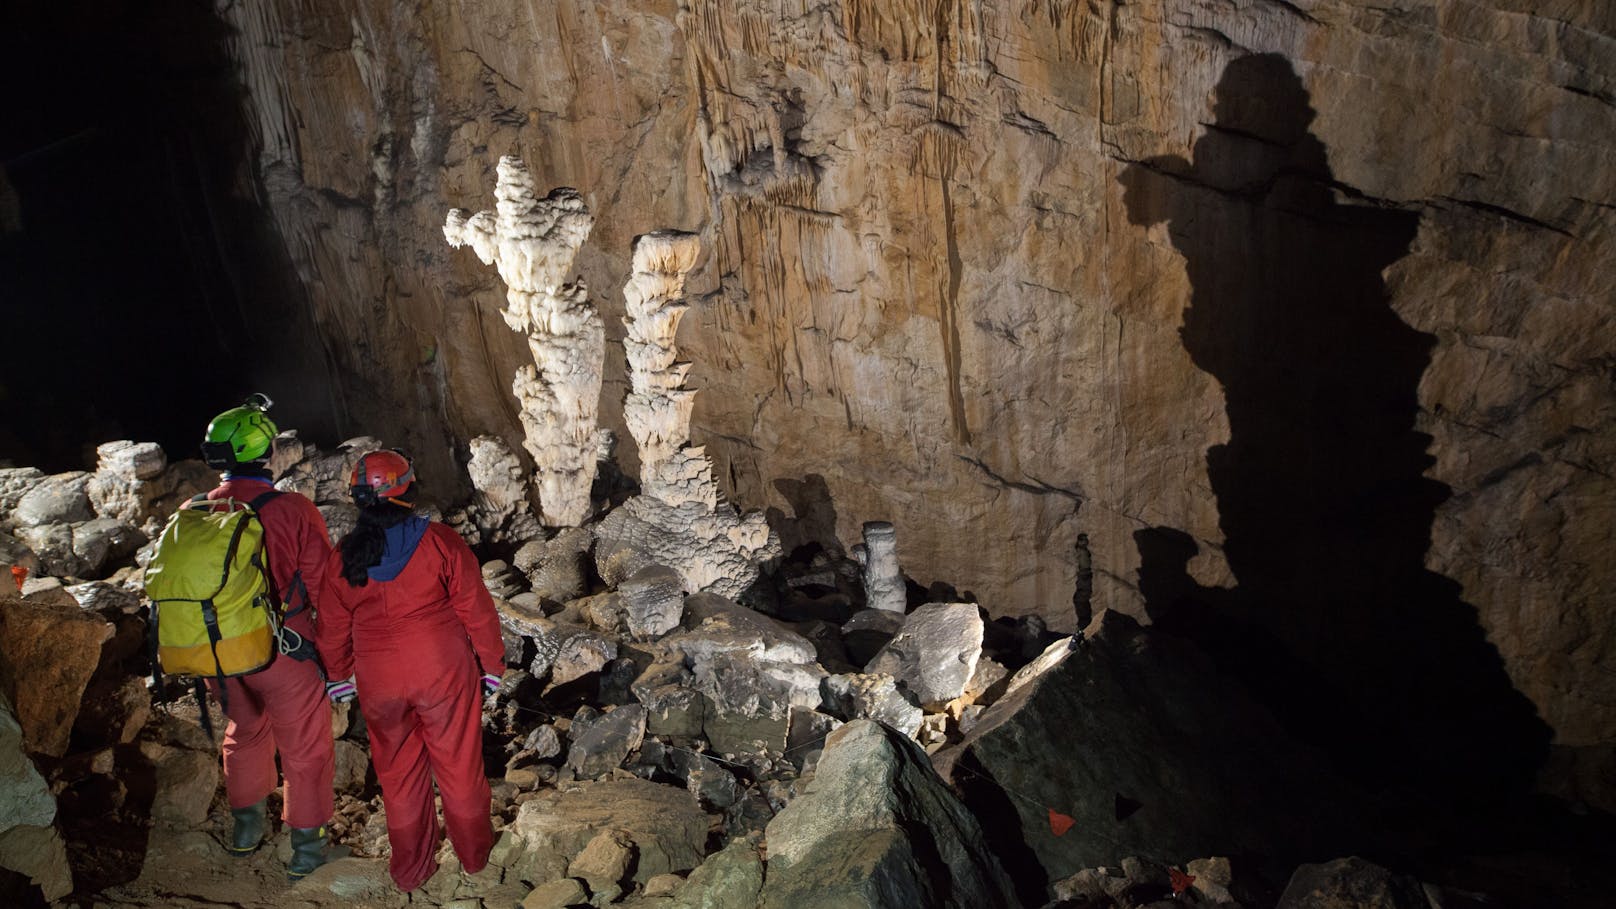 Familie und zwei Tour-Guides in Höhle eingeschlossen